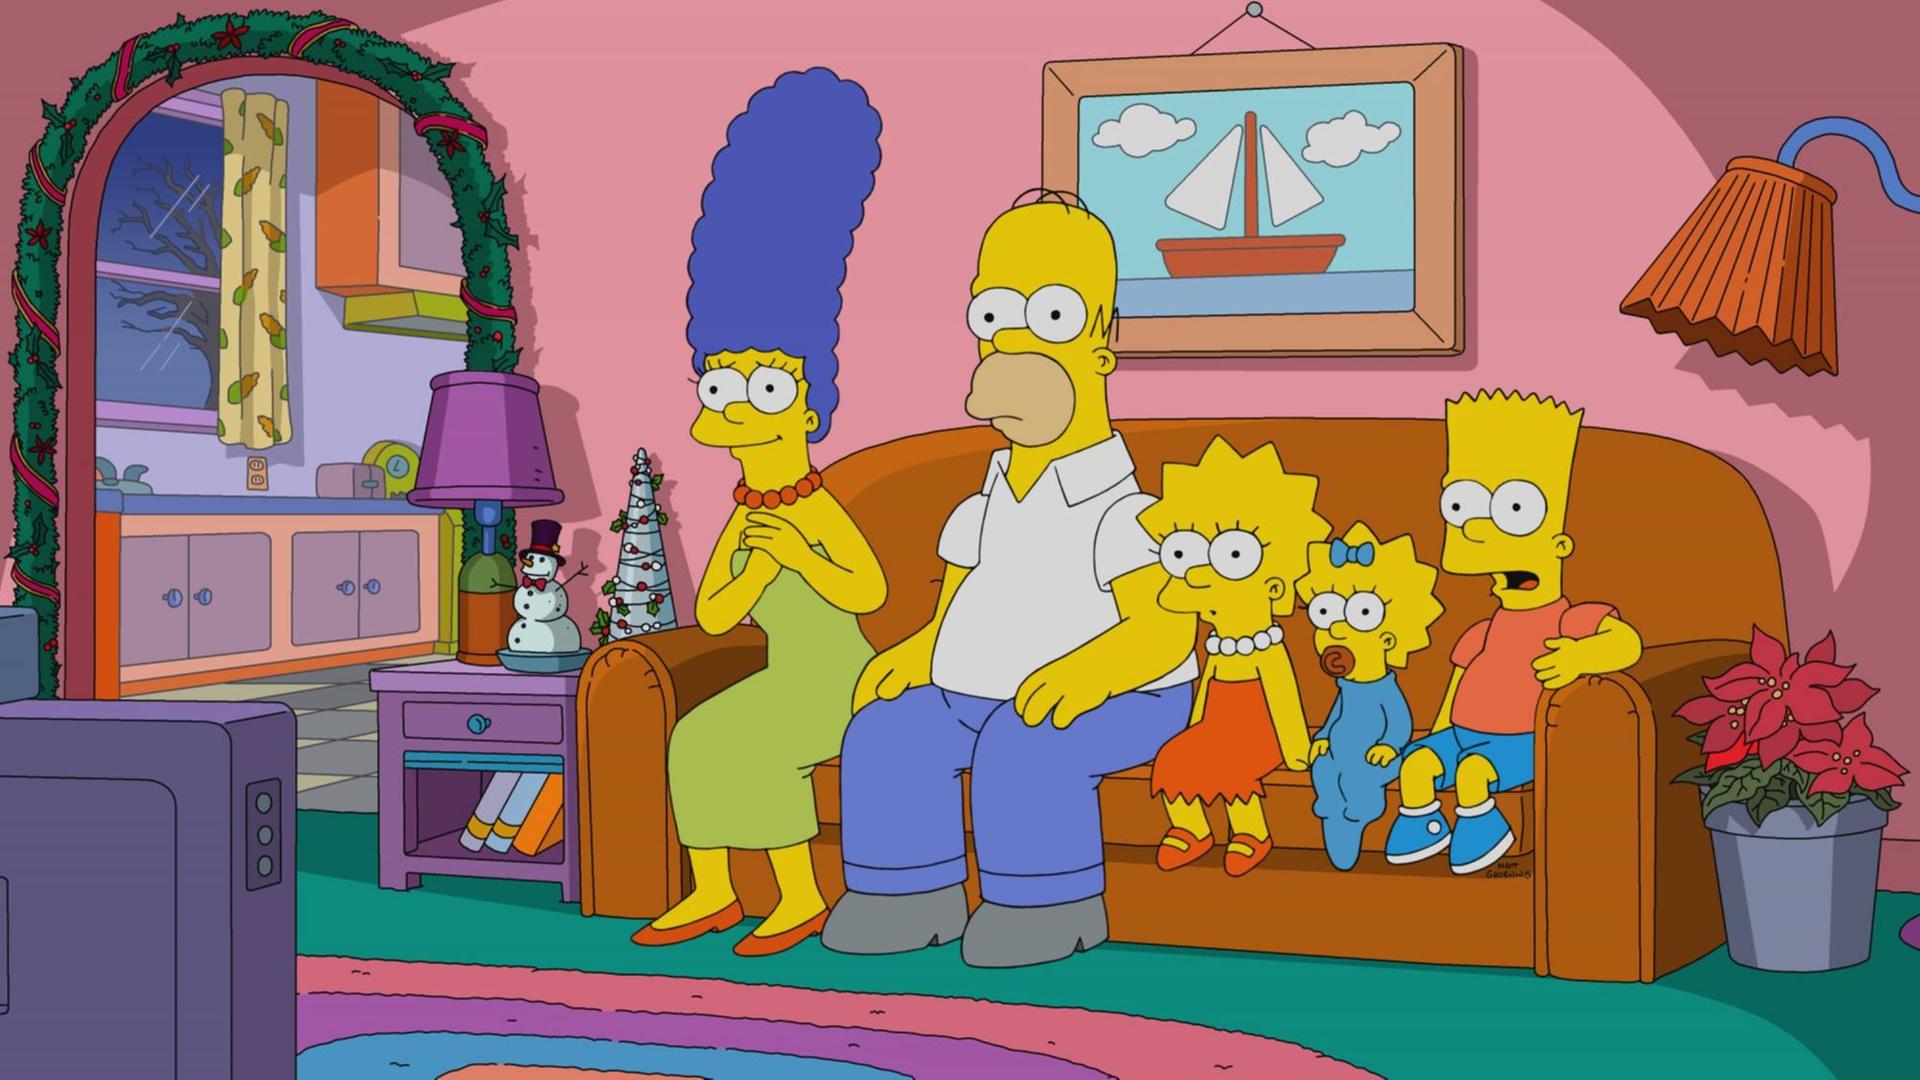 Szene aus der Trickserie "Die Simpsons": Die ganze Familie sitzt auf dem Sofa und schaut gebannt Fernsehen.